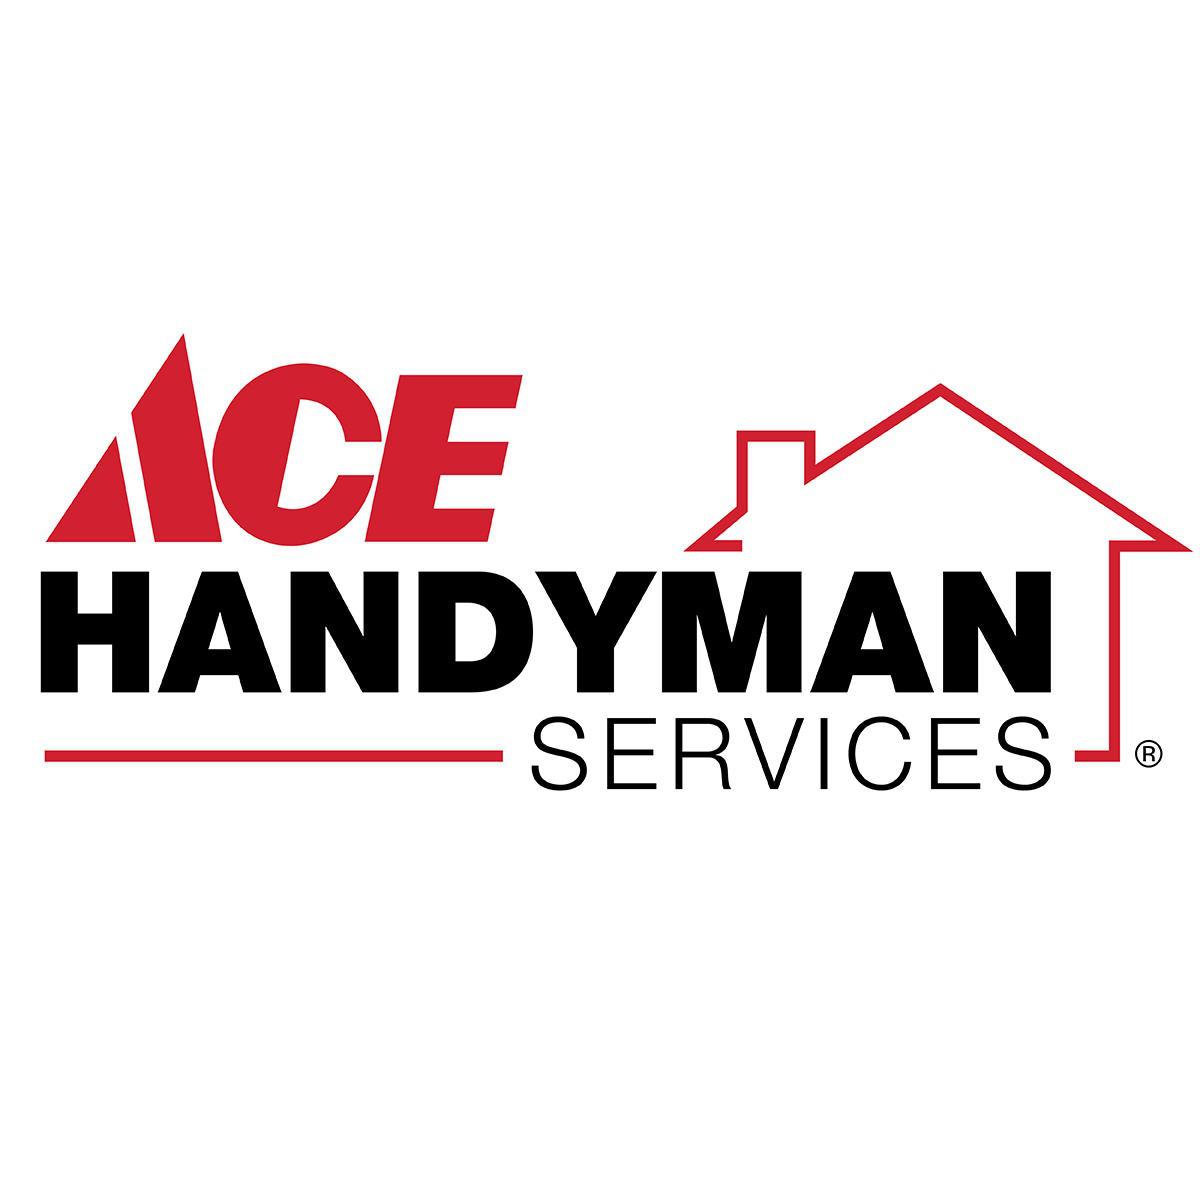 Ace Handyman Services Albuquerque North - Albuquerque, NM 87111 - (505)510-2986 | ShowMeLocal.com